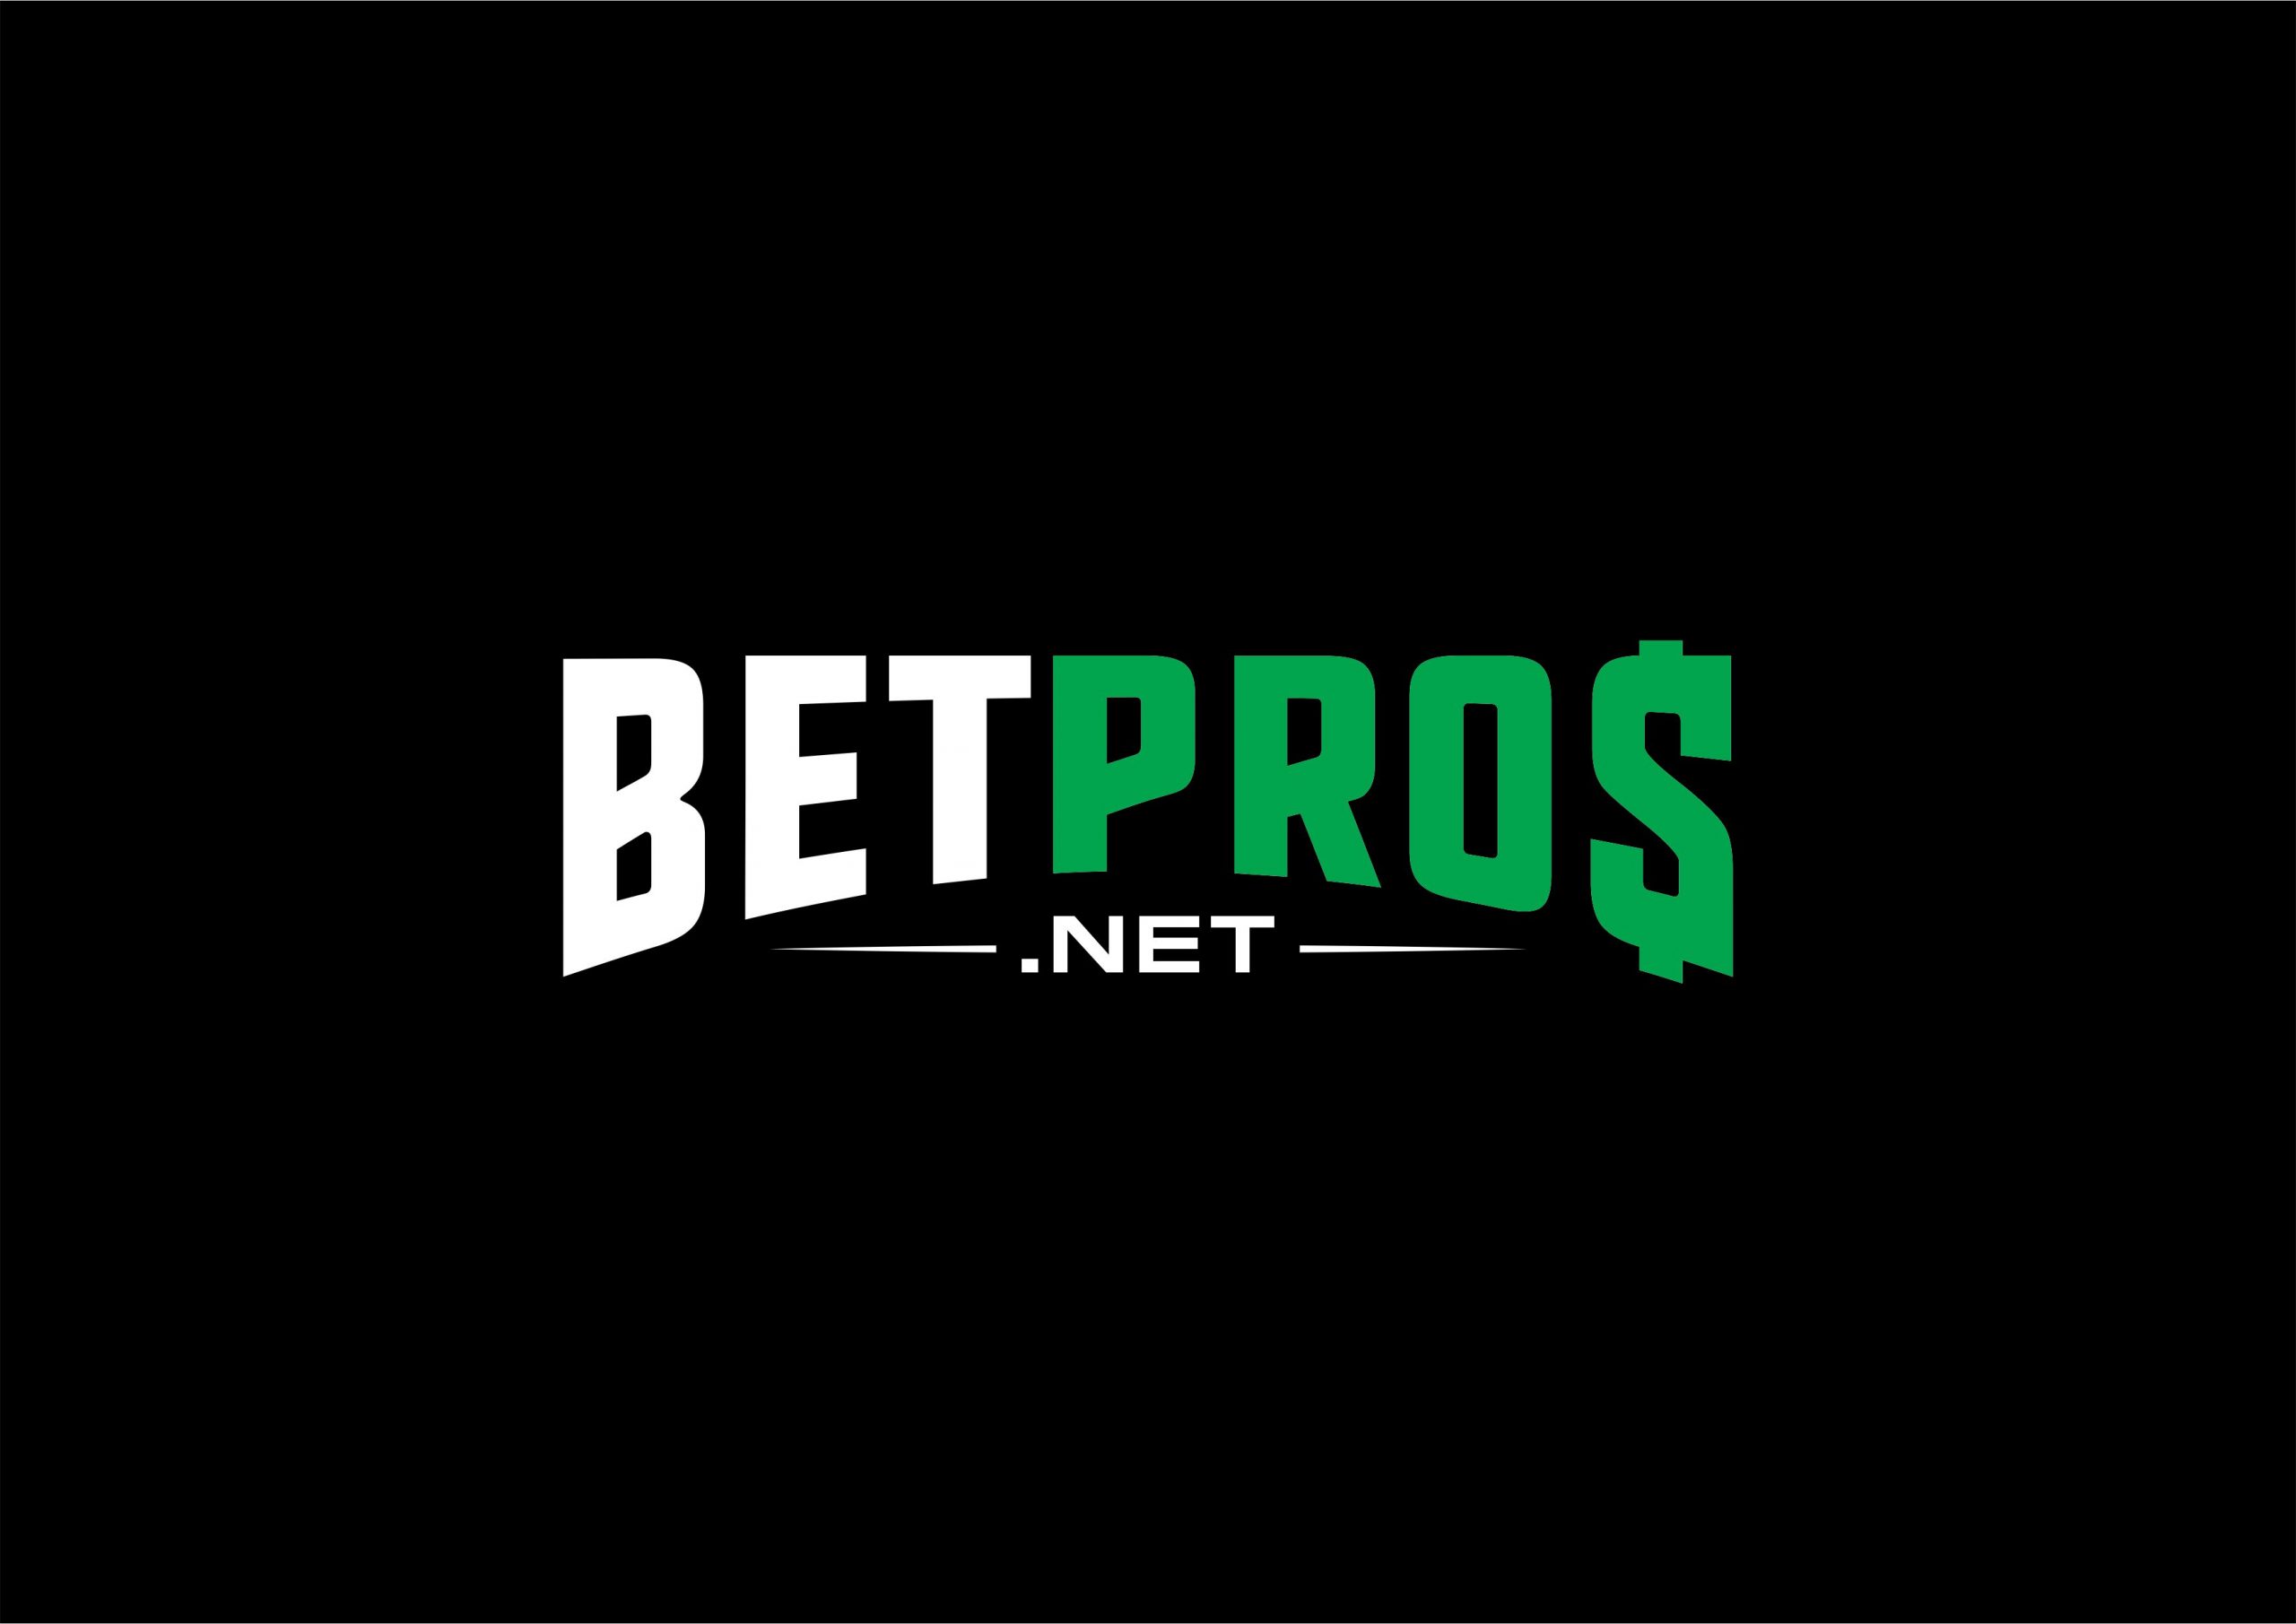 Betpros Logo scaled -